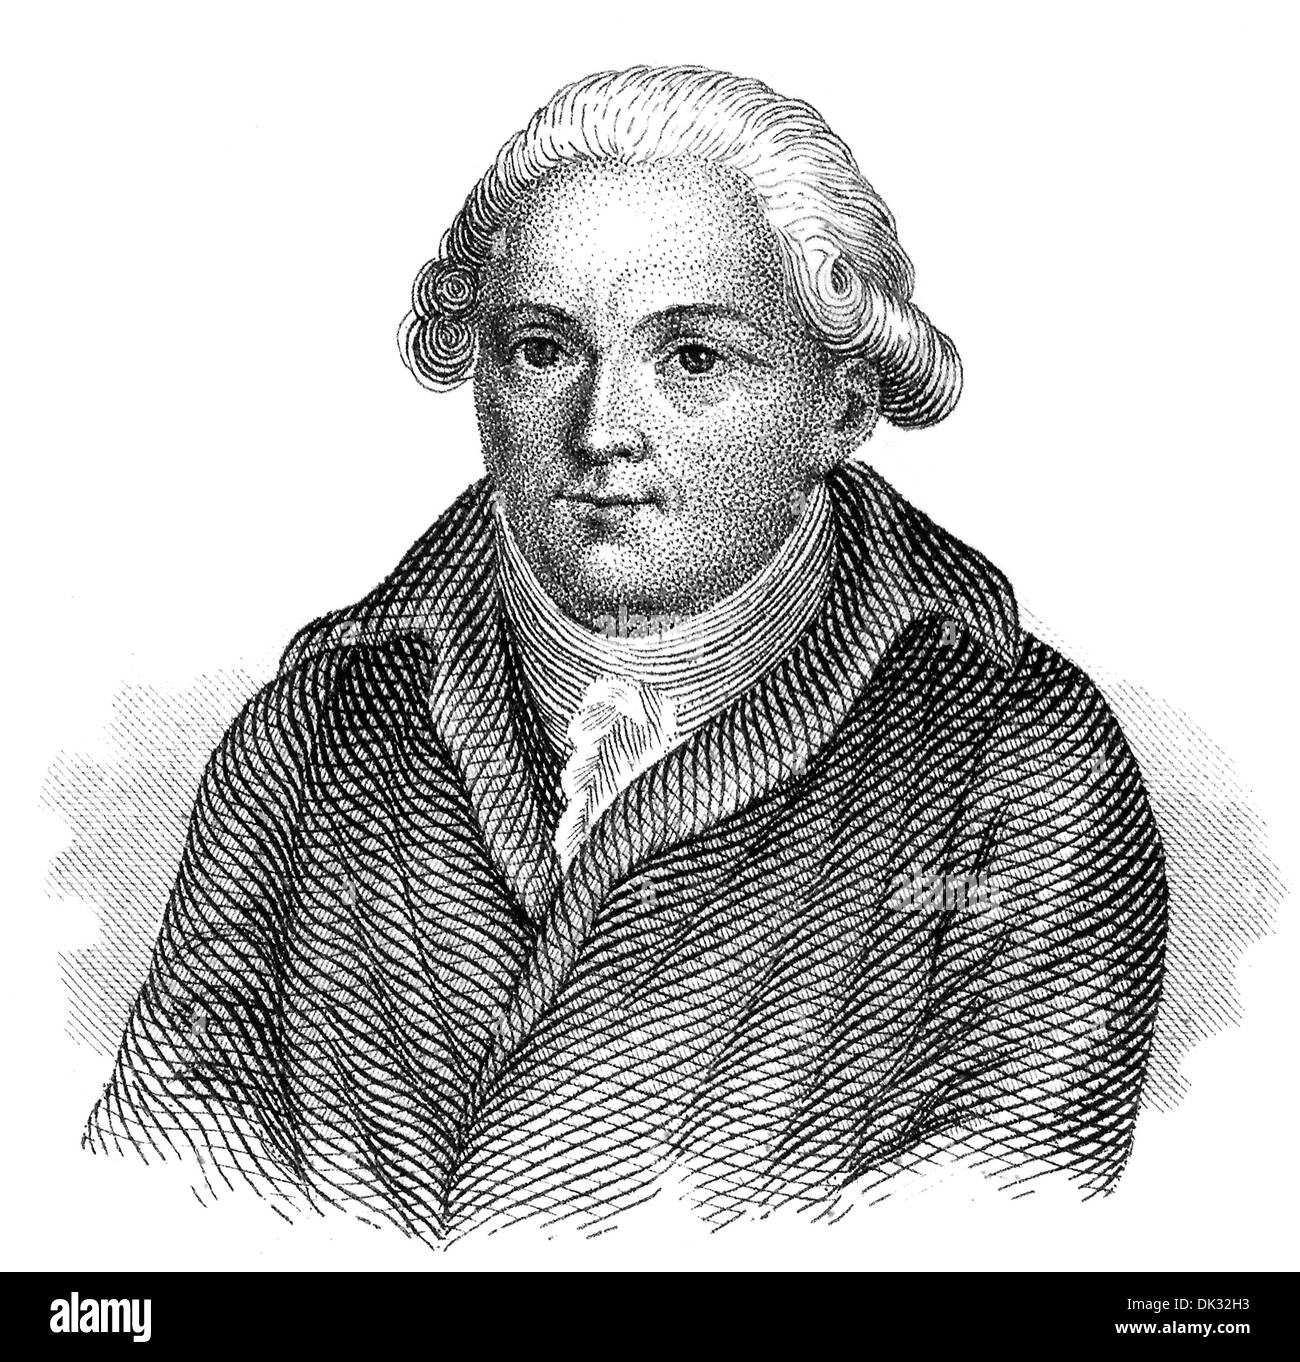 Portrait of Georg Christoph Lichtenberg, 1742 - 1799, a German scientist, satirist and Anglophile, scientist, Stock Photo